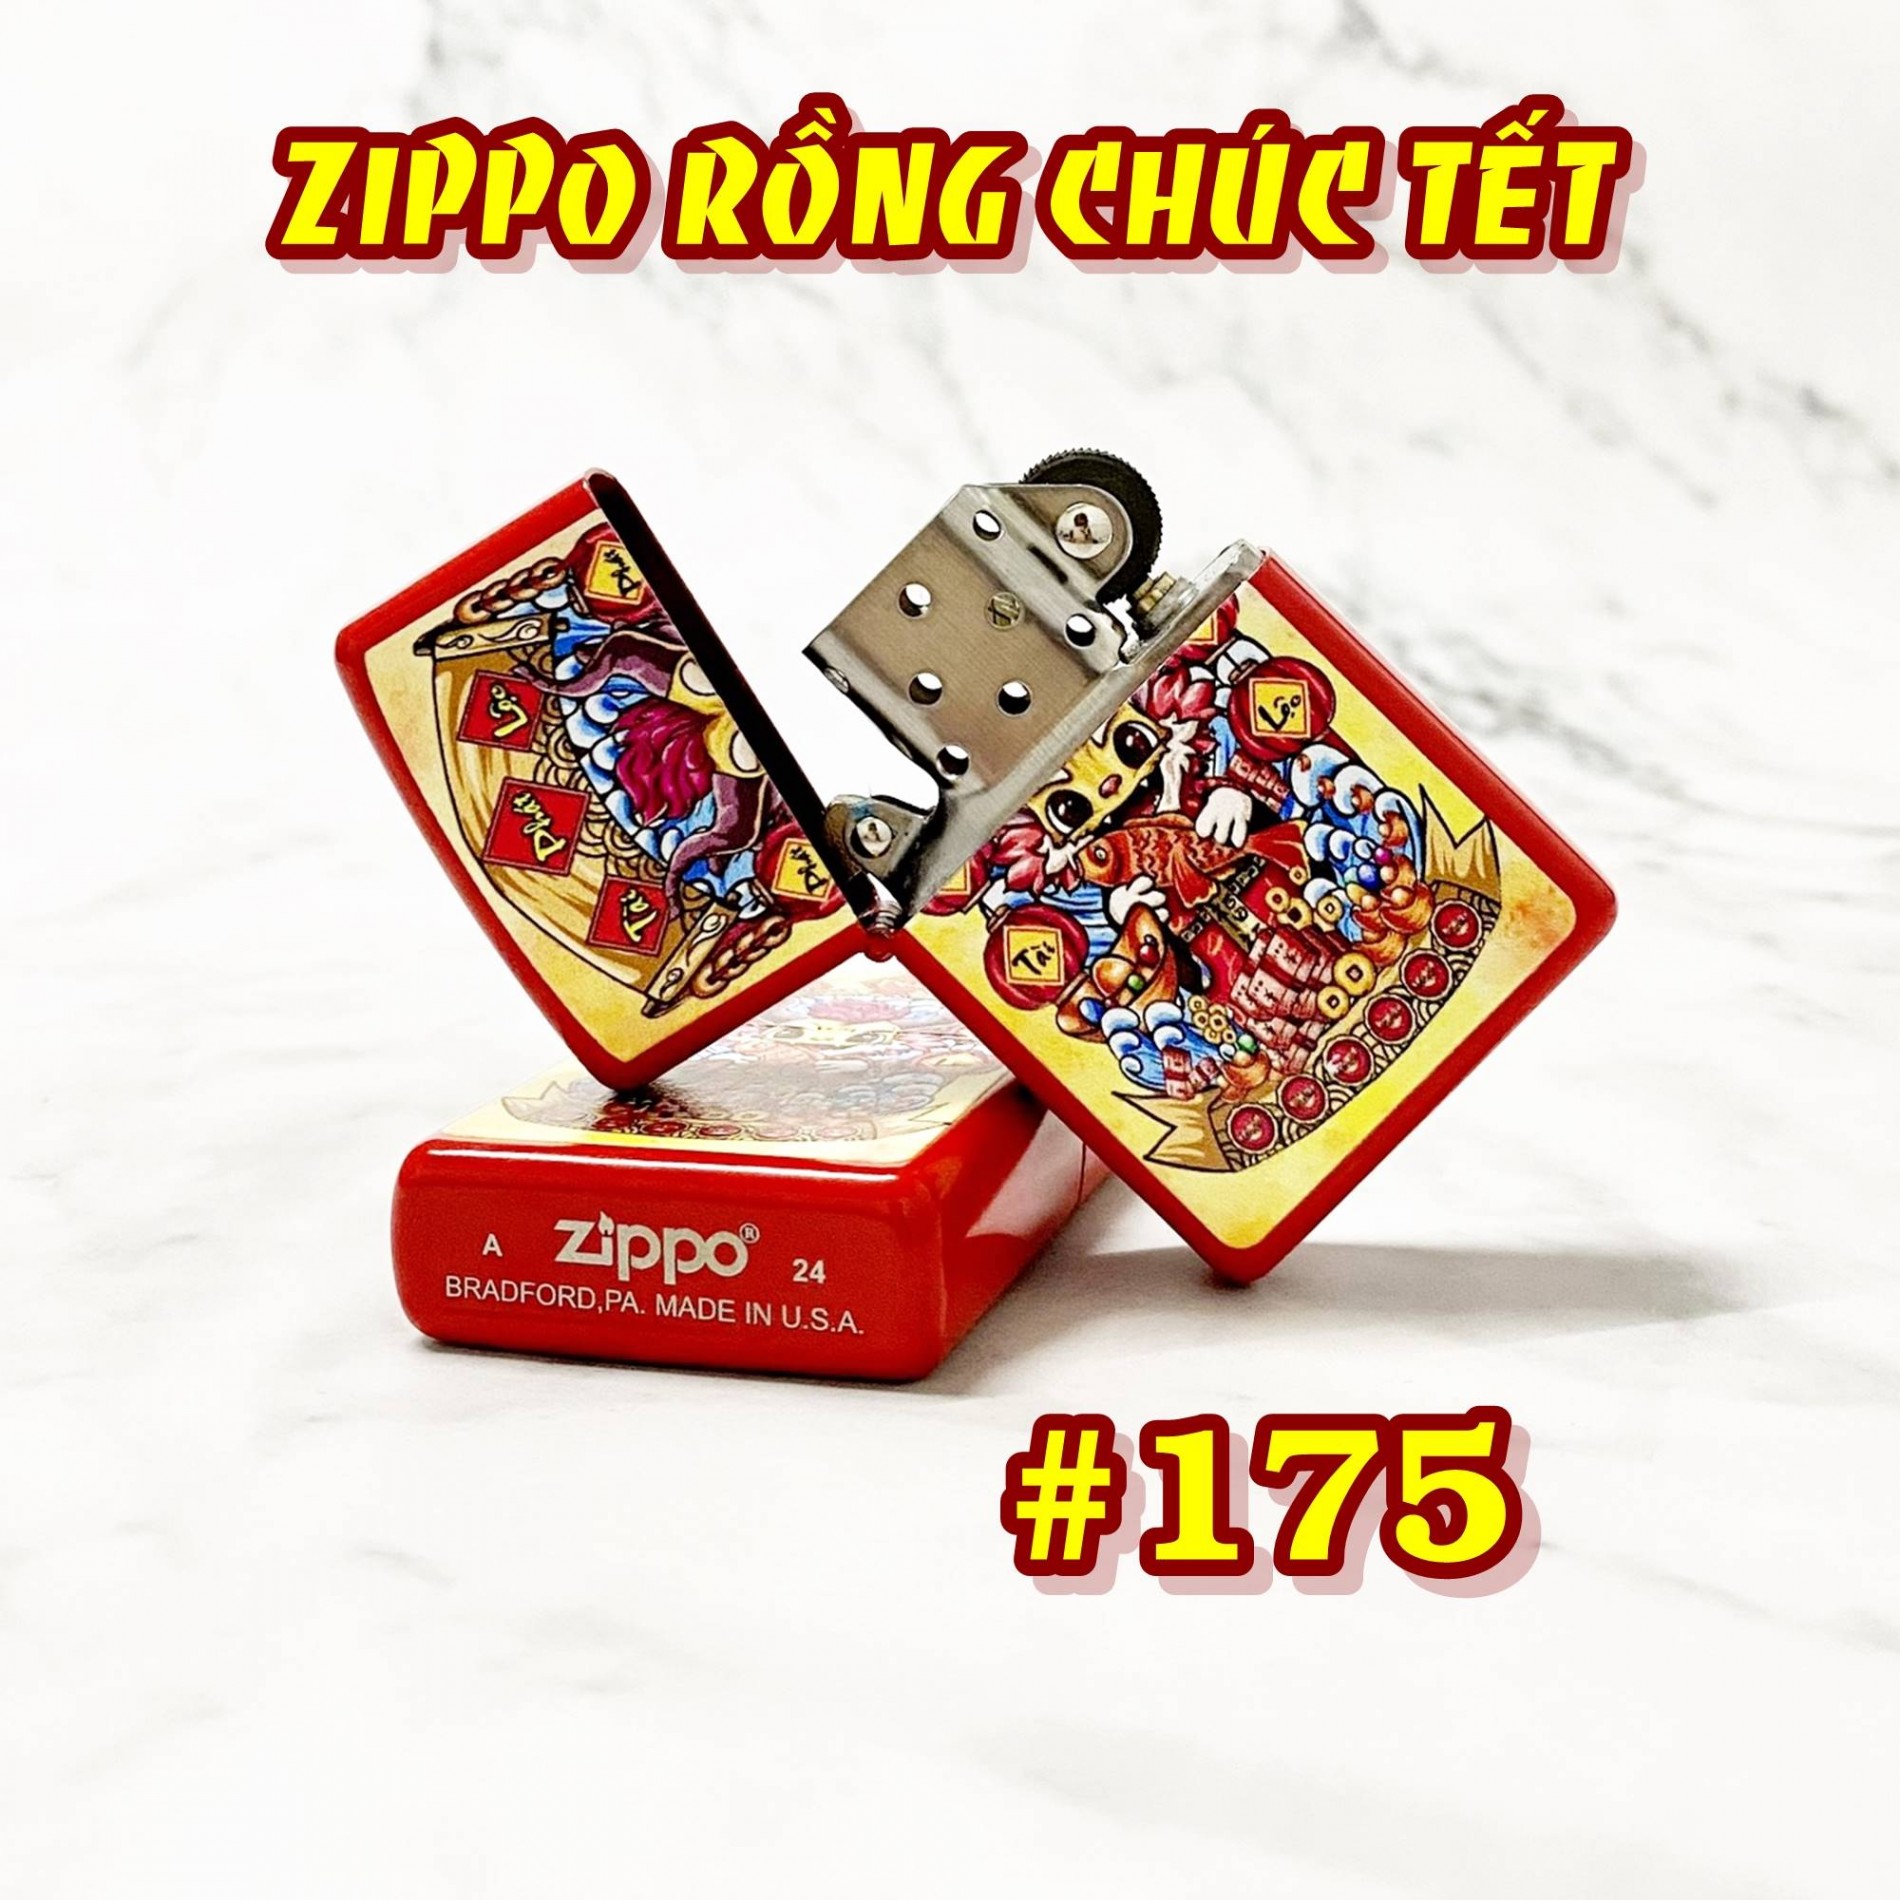 zippo_rong_chuc_tet_175_1